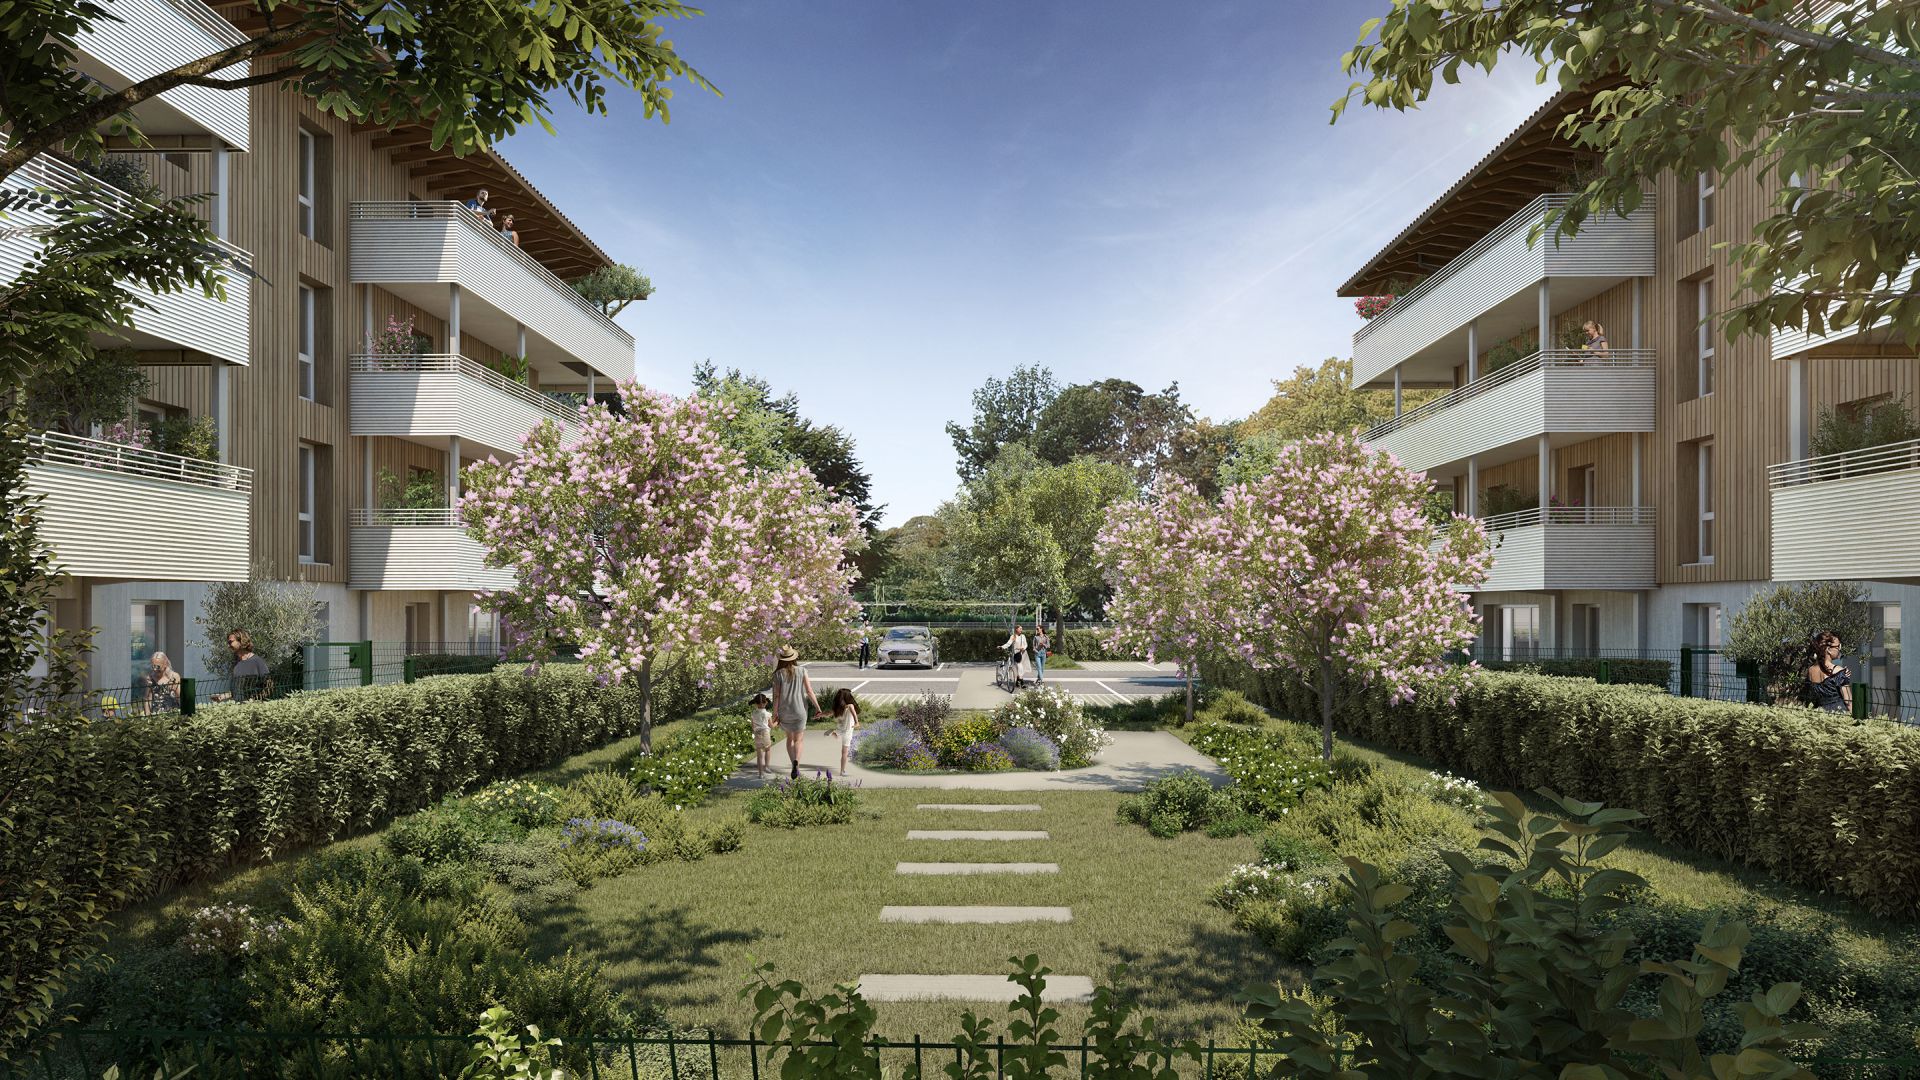 Greencity immobilier - achat appartements neufs du T2 au T3 - Résidence Jardins de Diane - 31170 Tournefeuille